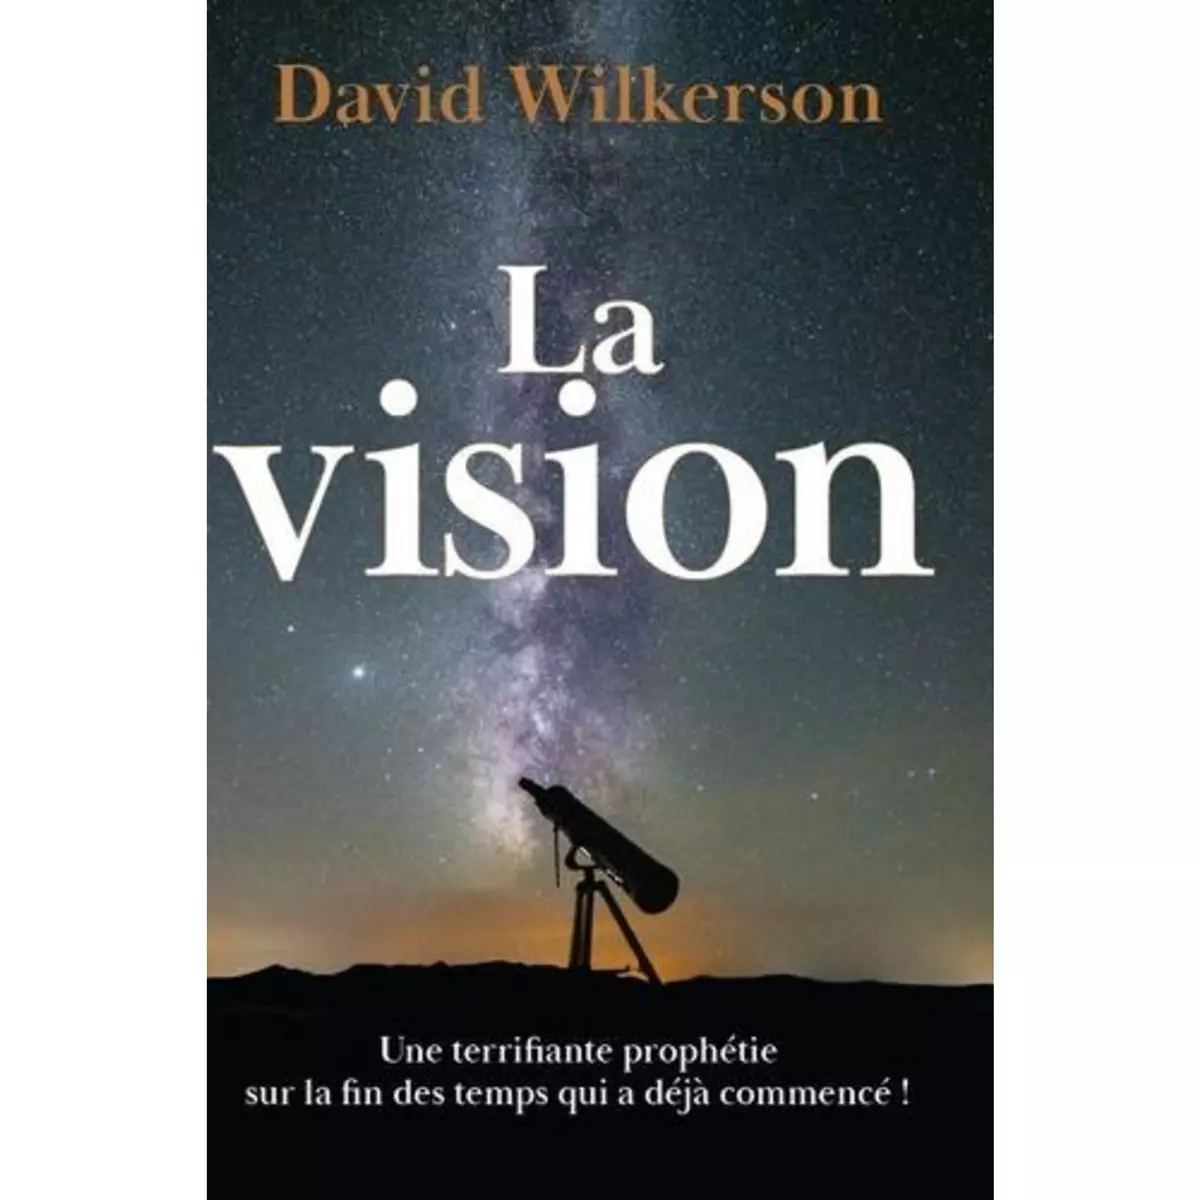  LA VISION, Wilkerson David